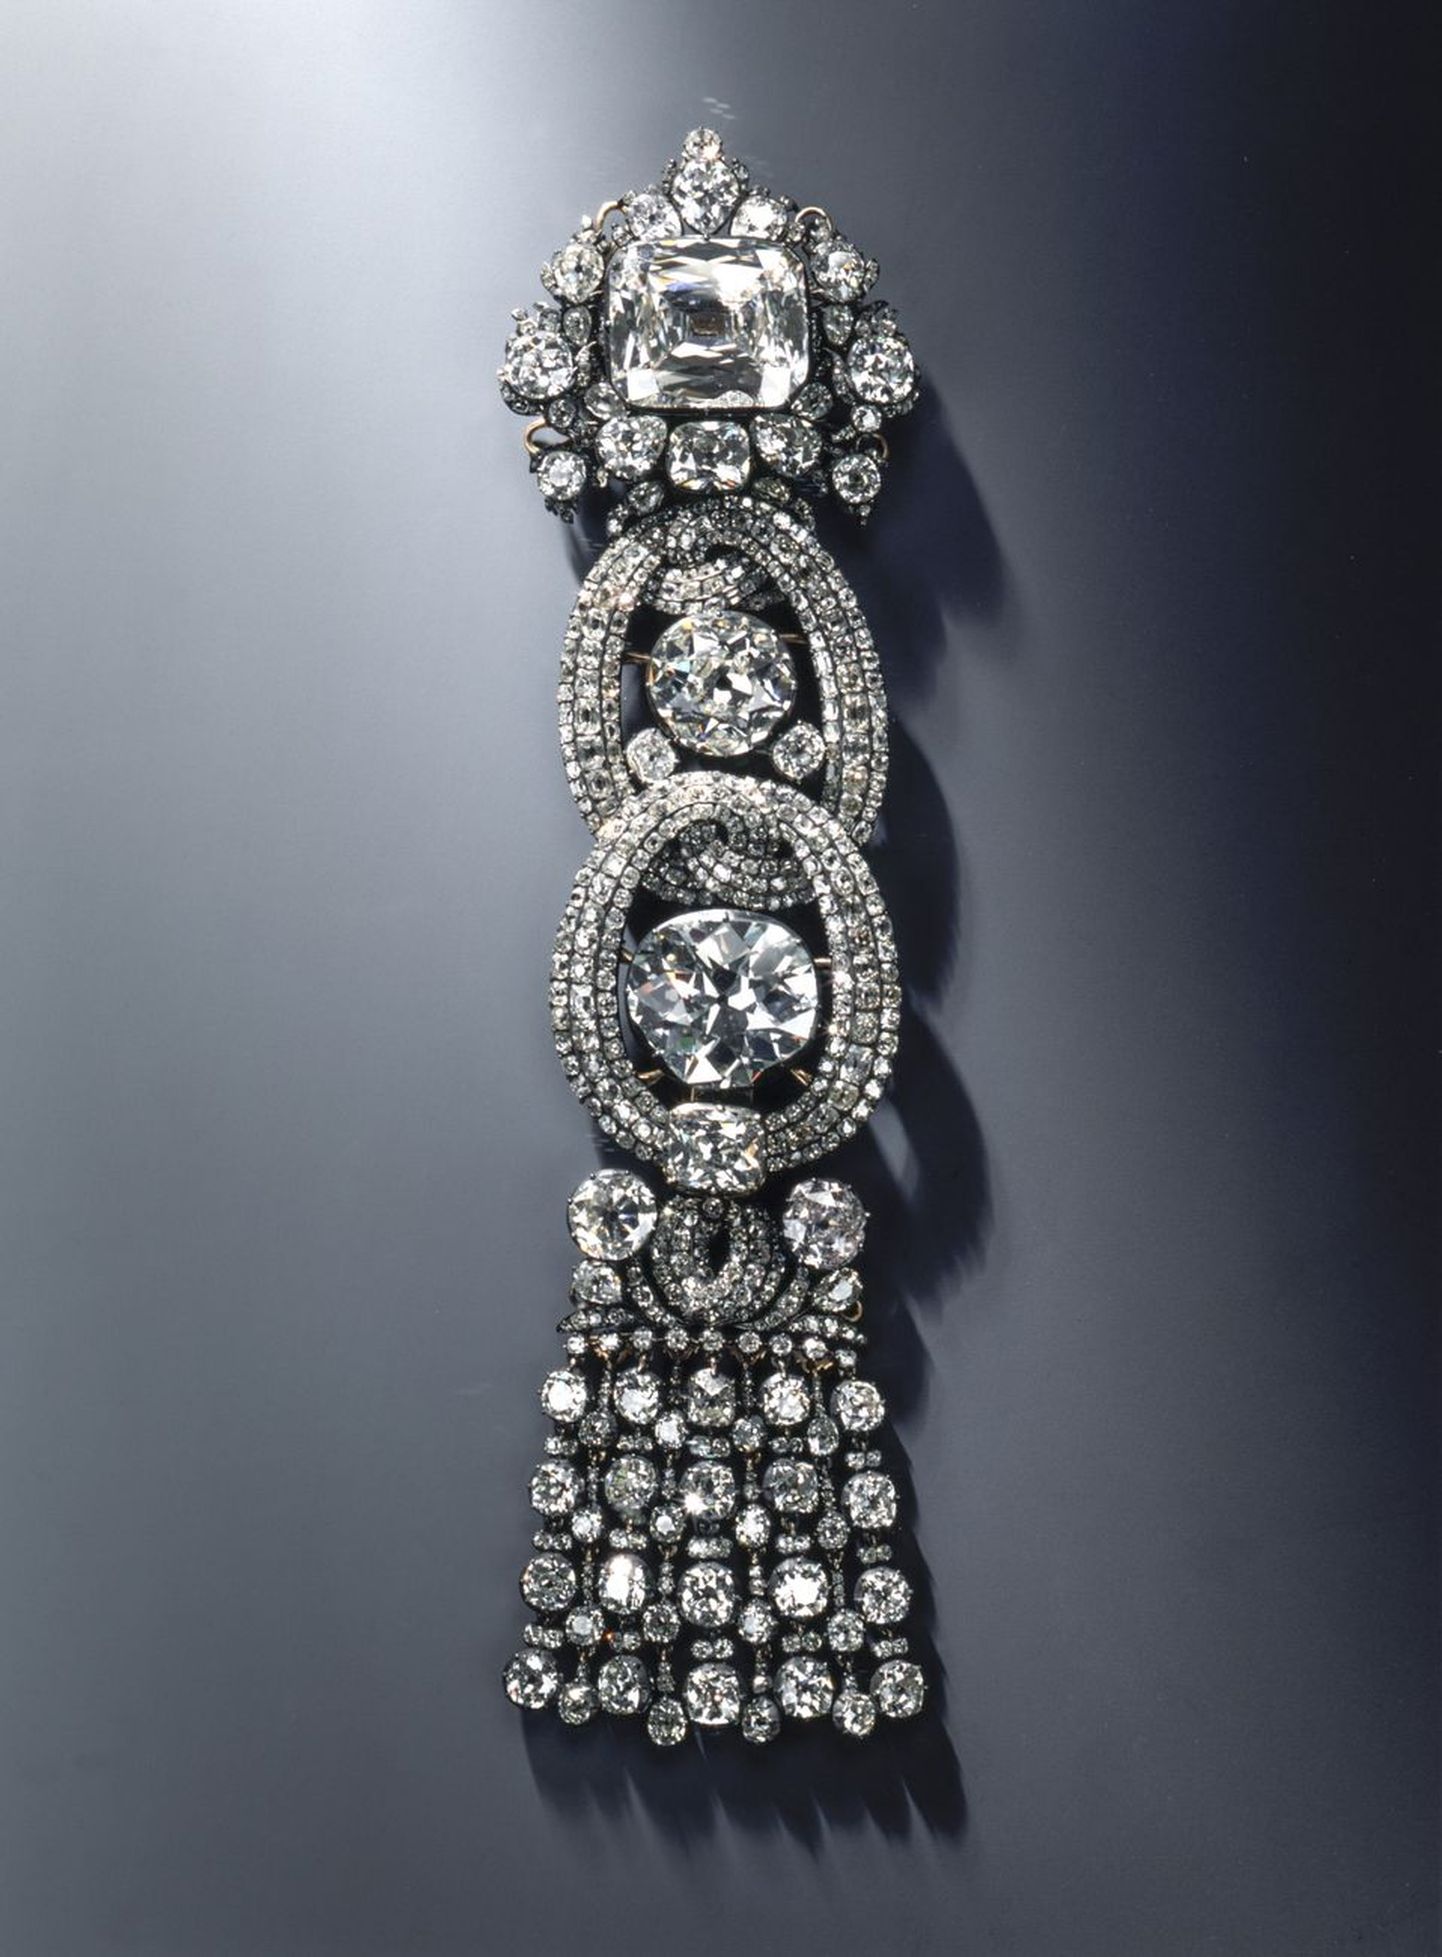 Dresdeni lossimuuseumist varastatud ehe, mille ülaosas on üle 10 miljoni euro maksev valge teemant